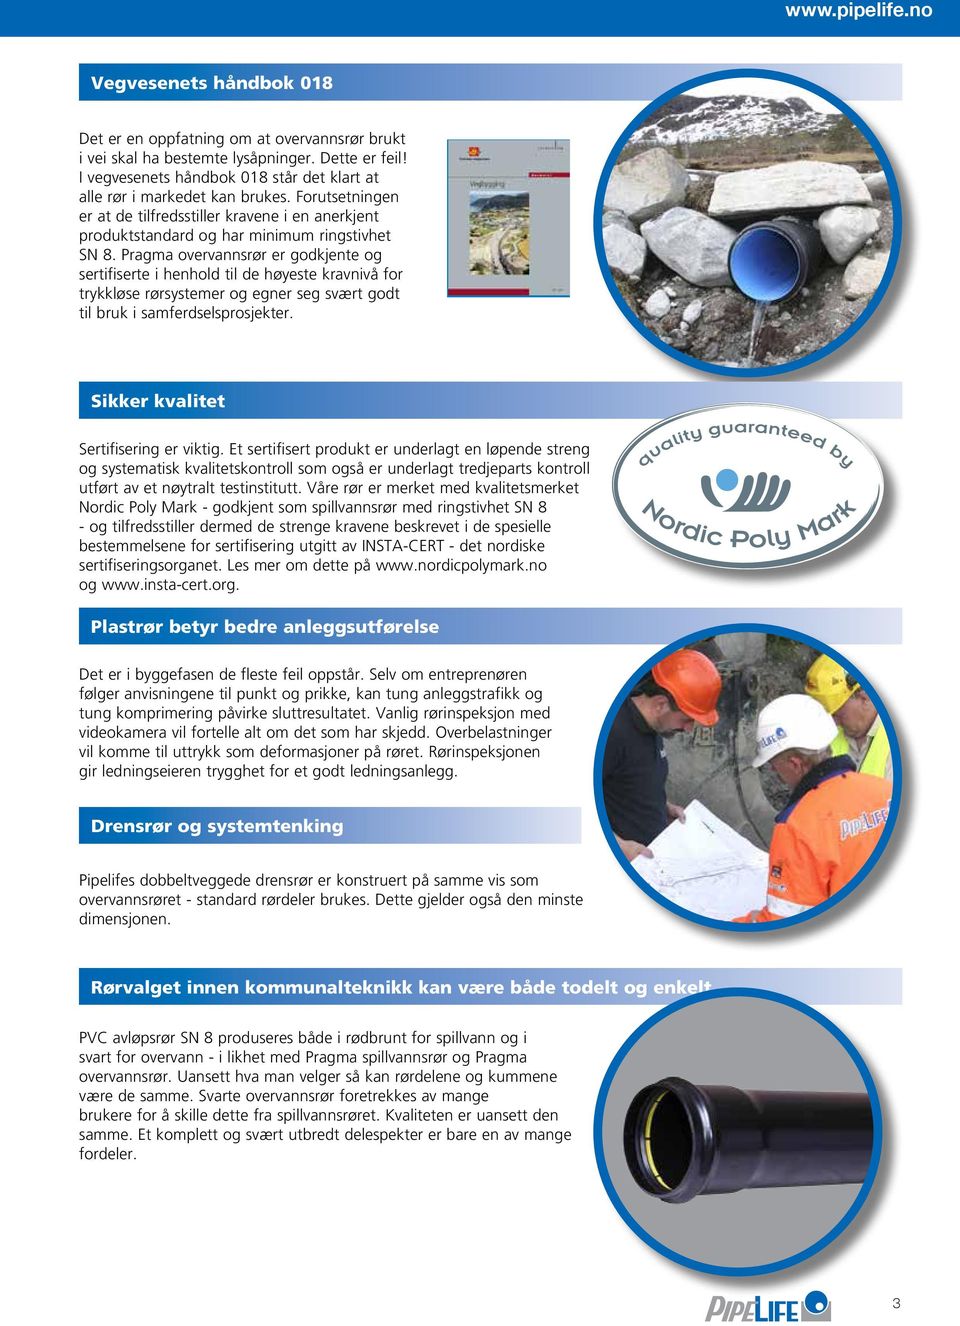 Pragma overvannsrør er godkjente og sertifiserte i henhold til de høyeste kravnivå for trykkløse rørsystemer og egner seg svært godt til bruk i samferdselsprosjekter.